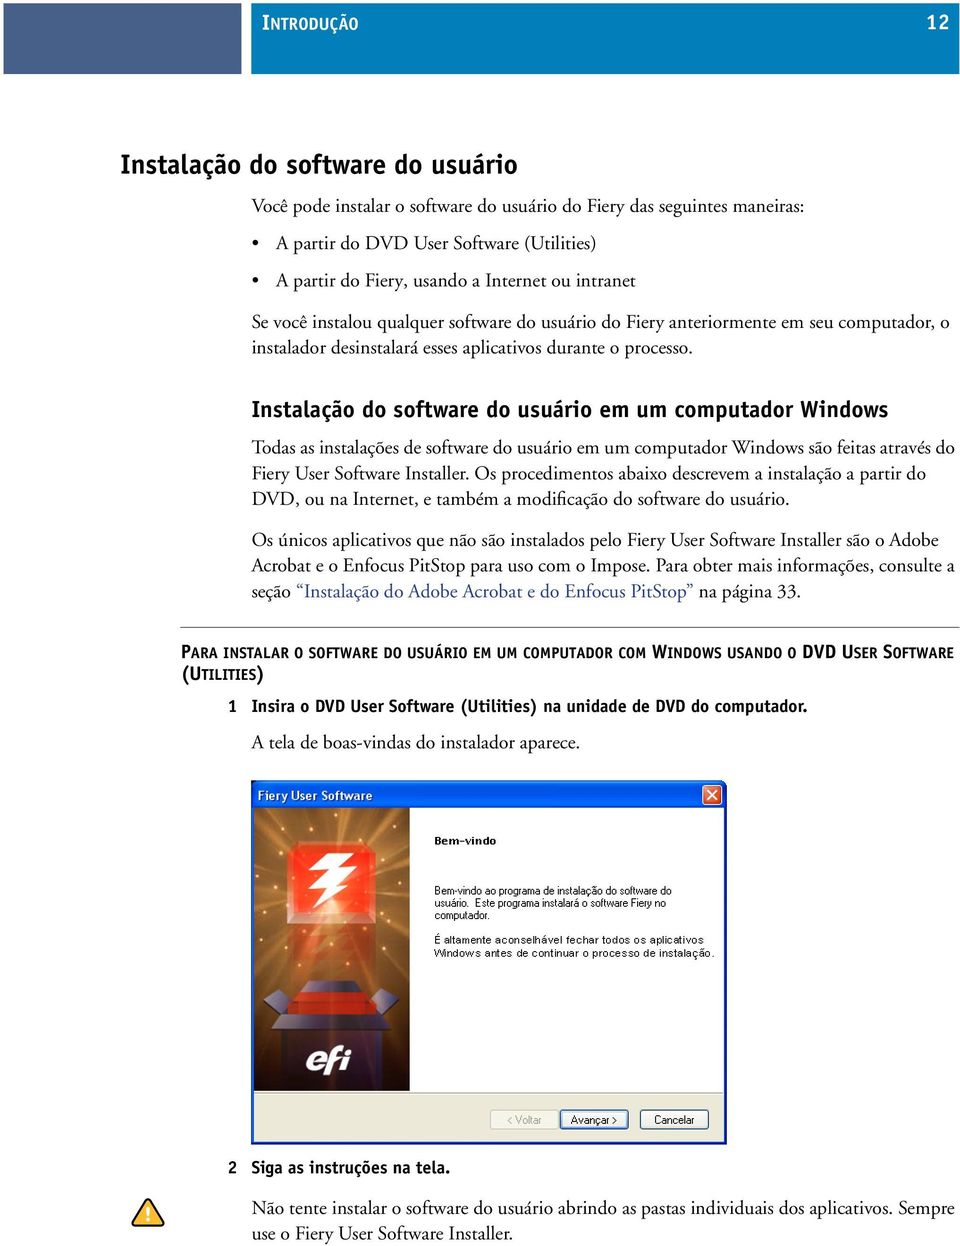 Instalação do software do usuário em um computador Windows Todas as instalações de software do usuário em um computador Windows são feitas através do Fiery User Software Installer.